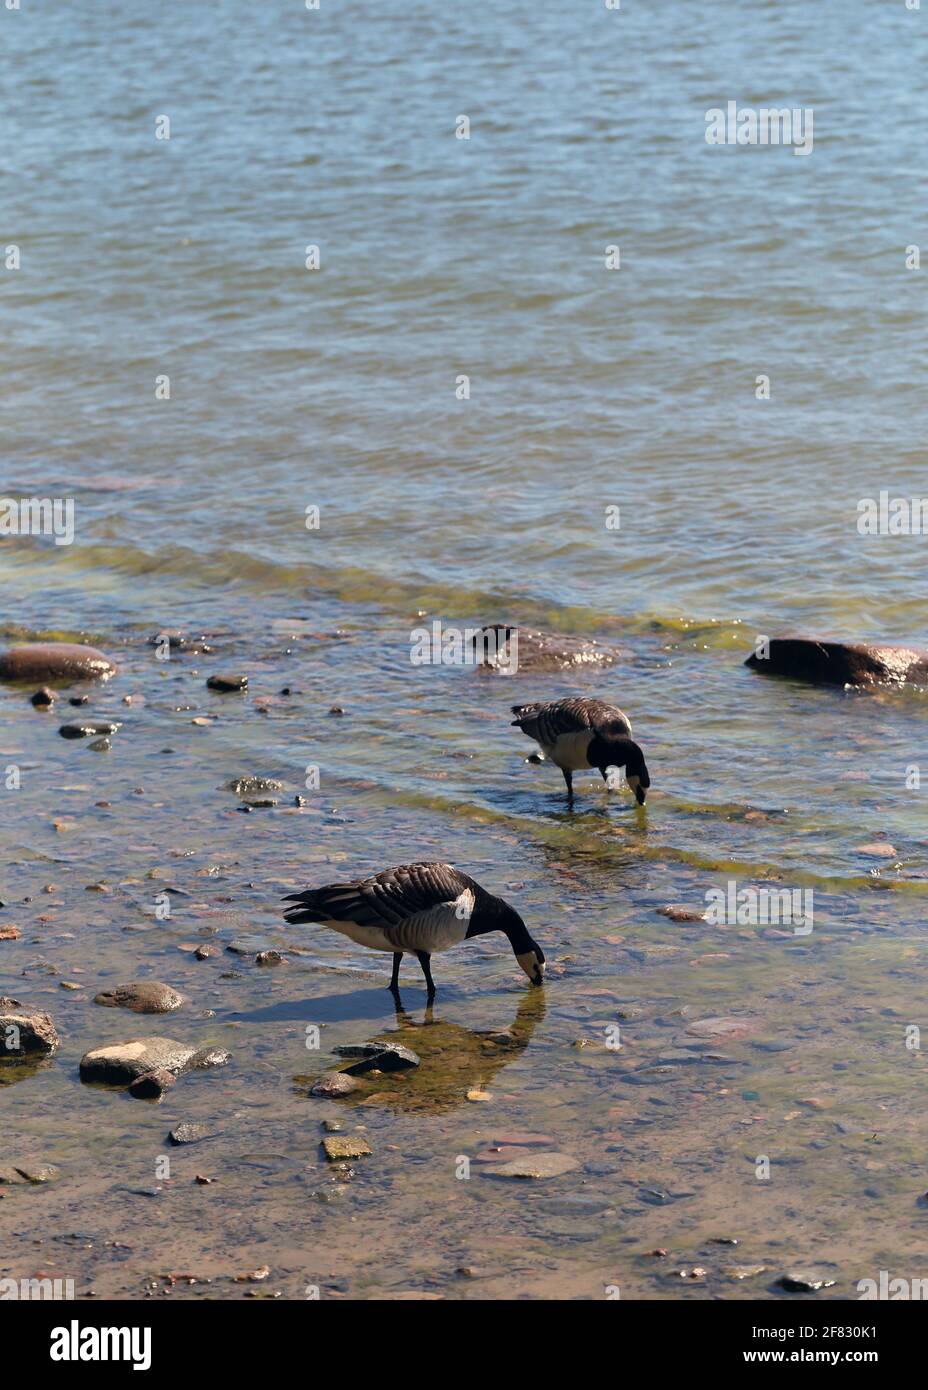 Più oca canadese fotografata nel Mar Baltico in una spiaggia di Helsinki, Finlandia. Giugno 2019. Giorno estivo soleggiato. L'oca canadese è una specie di anatra. Foto Stock